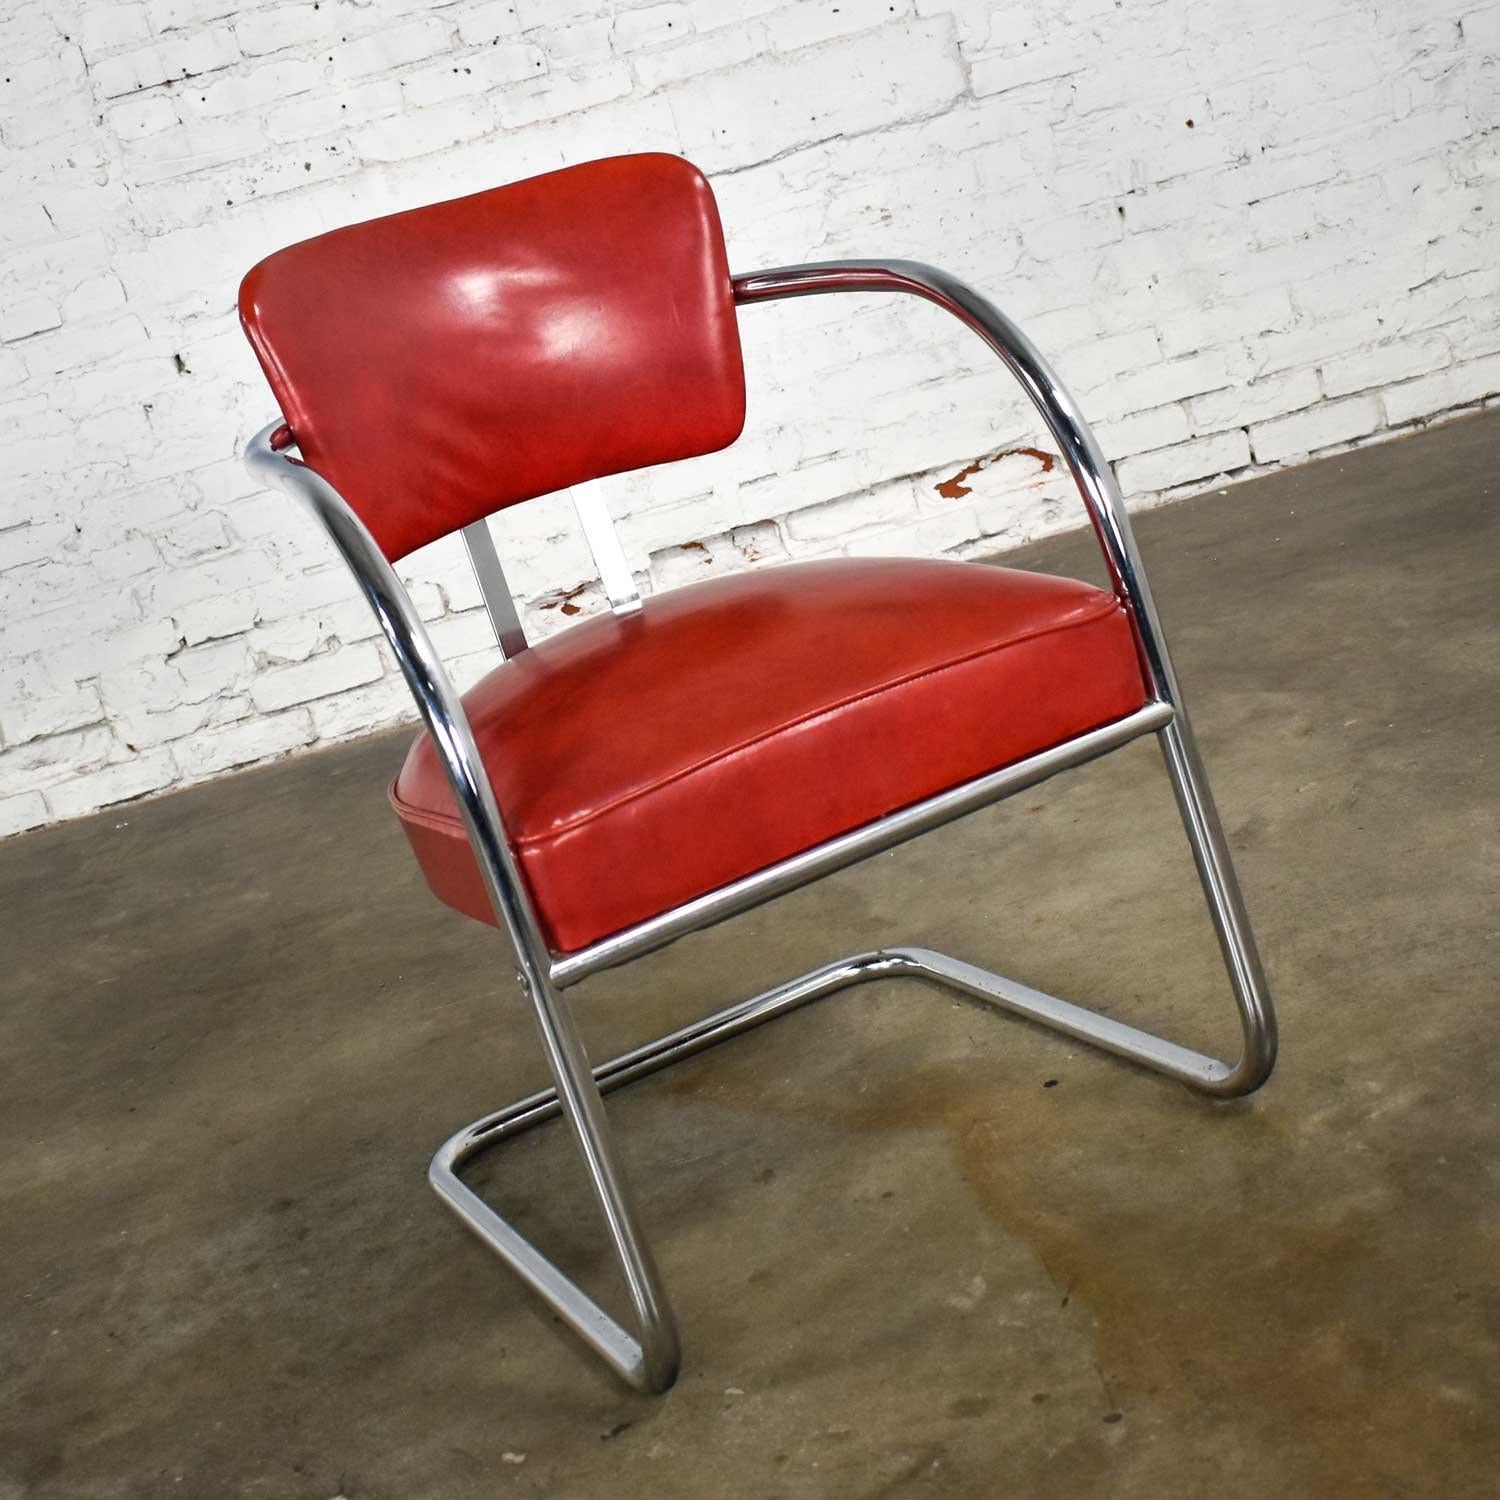 Streamlined Moderne Streamline Art Deco Cantilever Chair Chrome & Red Vinyl Attr Kem Webber-Lloyds For Sale